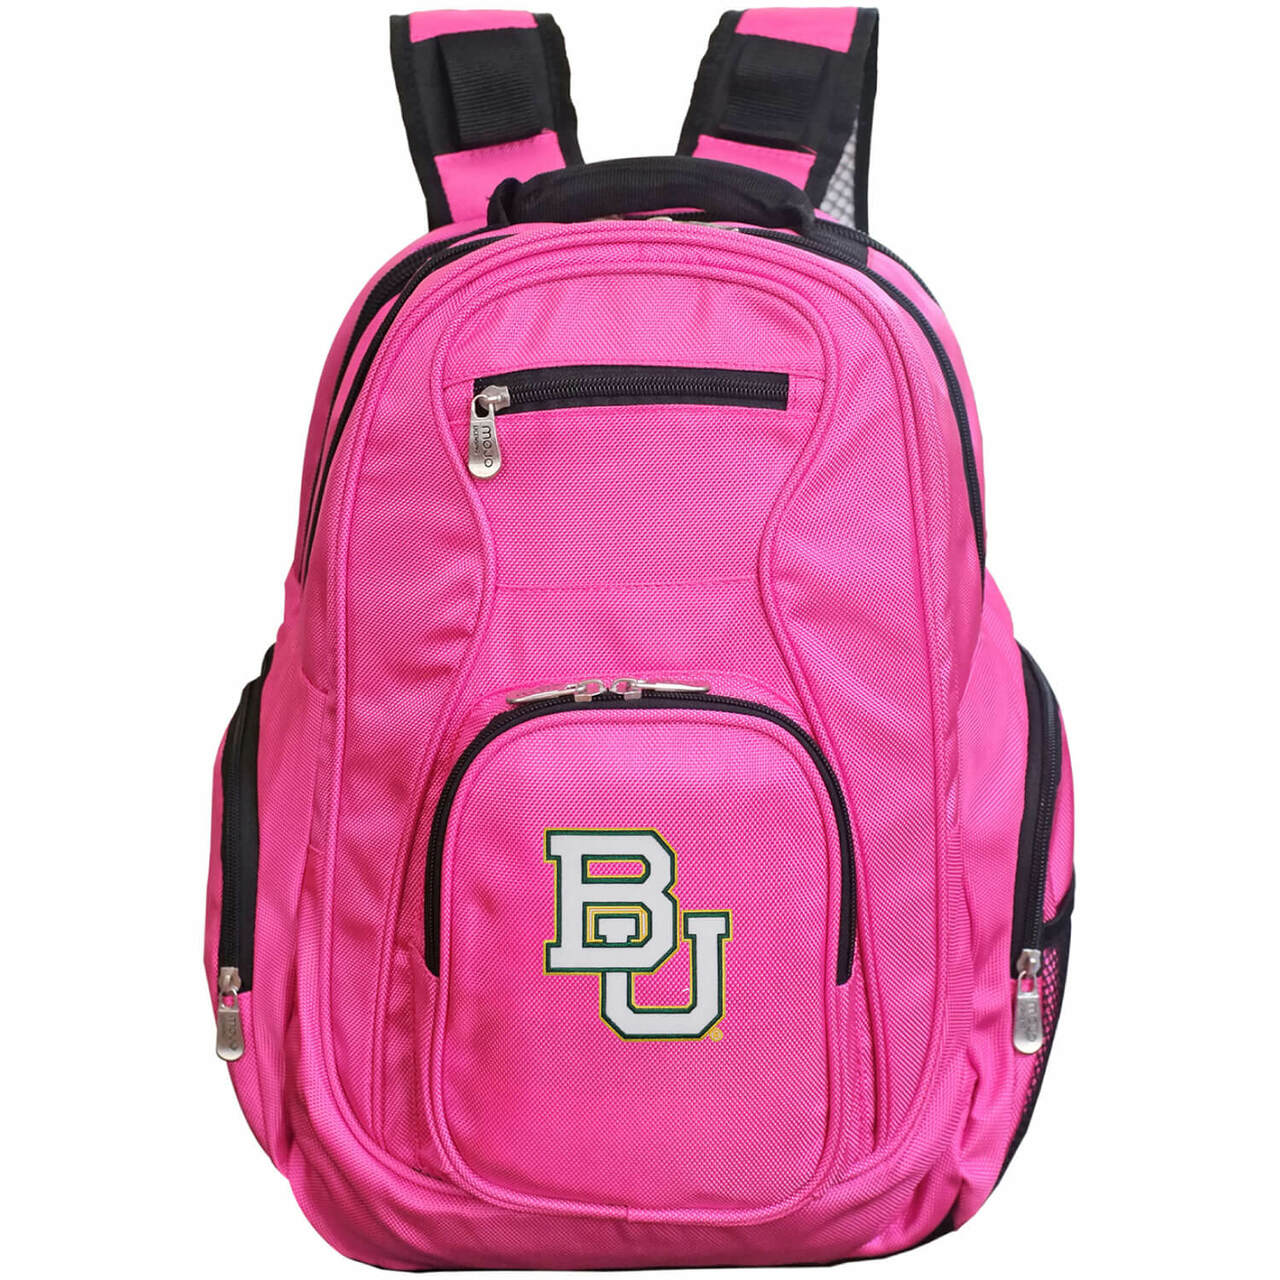 Baylor Bears Laptop Backpack Pink